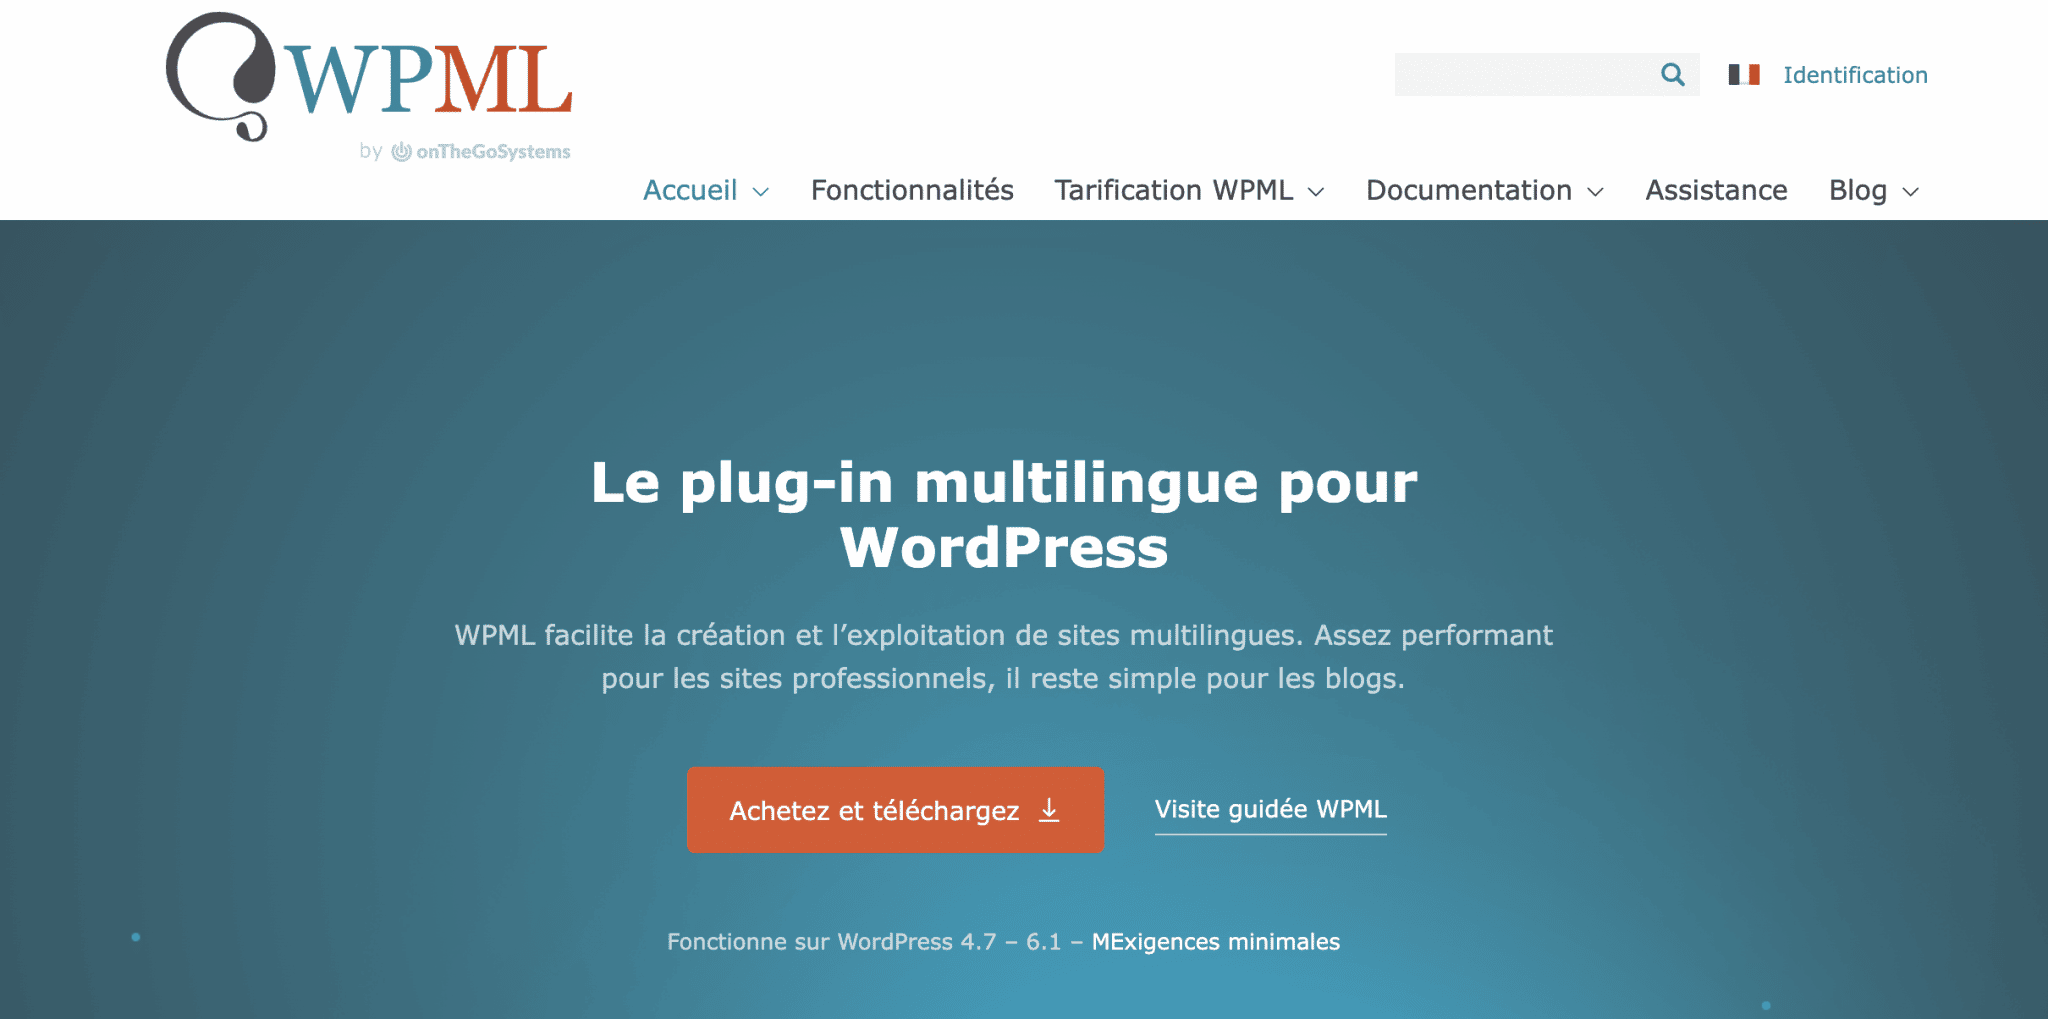 L'accueil du site de WPML, le plugin multilingue sur WordPress.